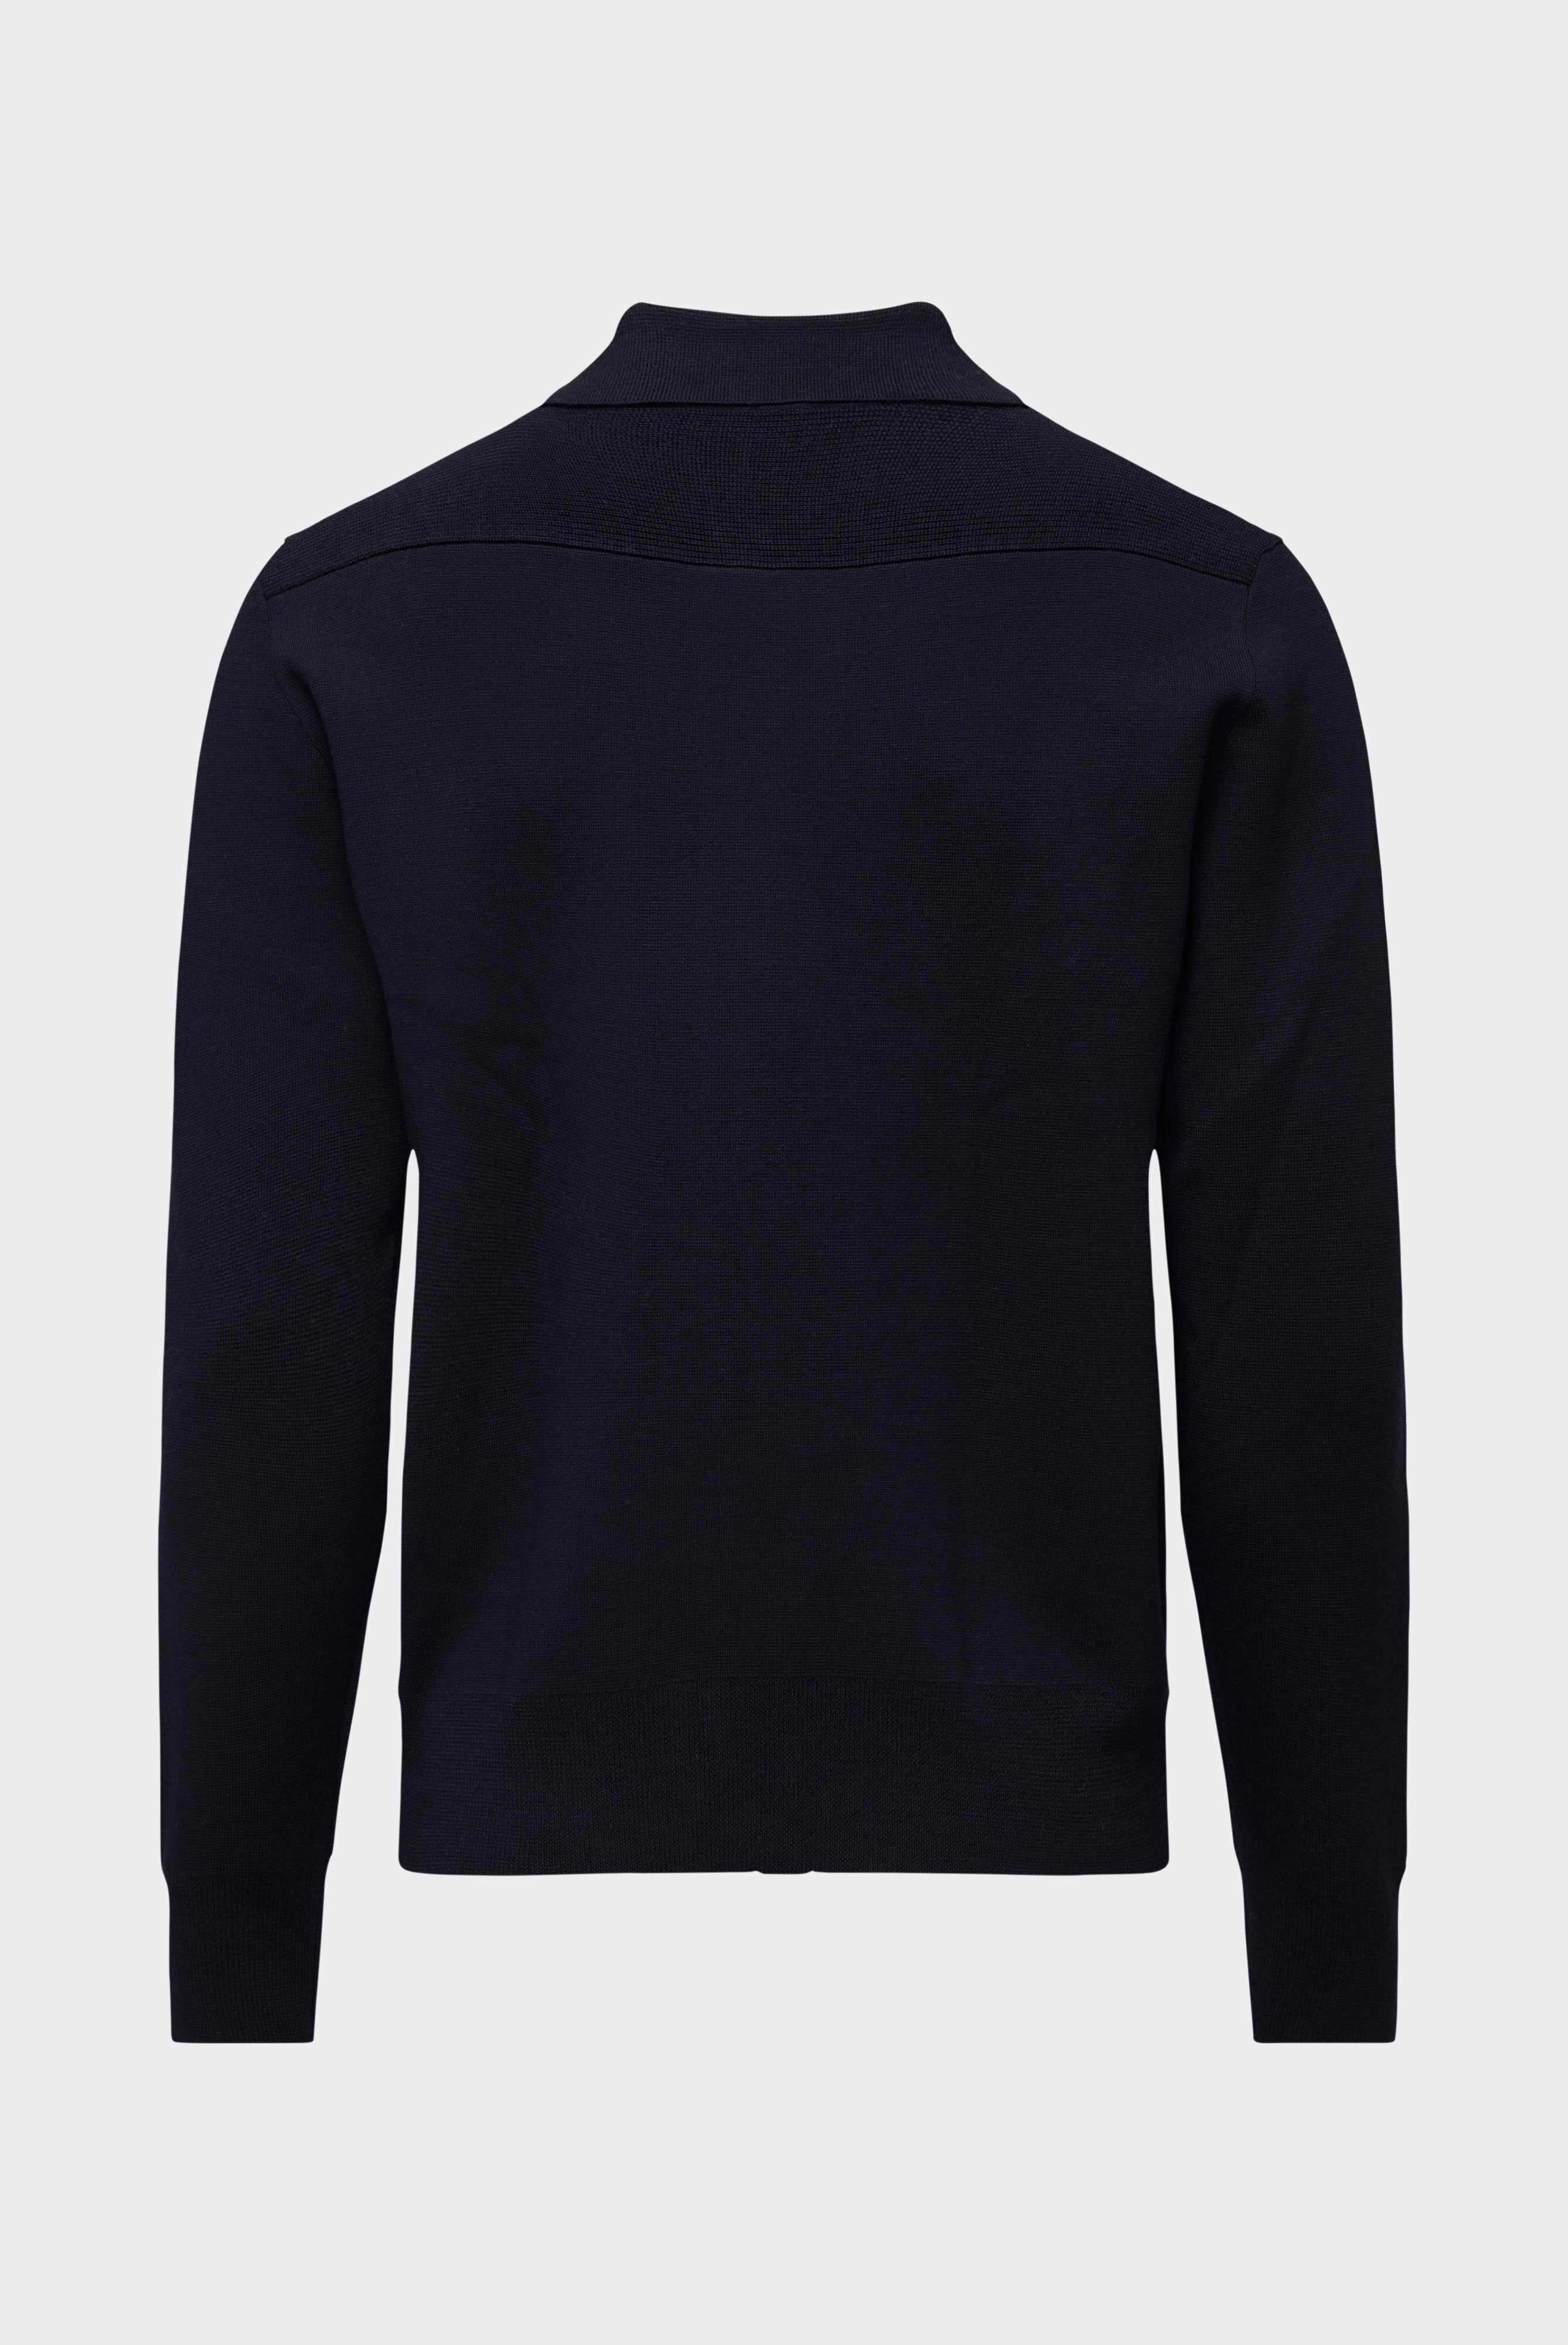 Sweaters & Cardigans+Zip Jacket in Ultrafine Merino+82.8638..S00248.790.S